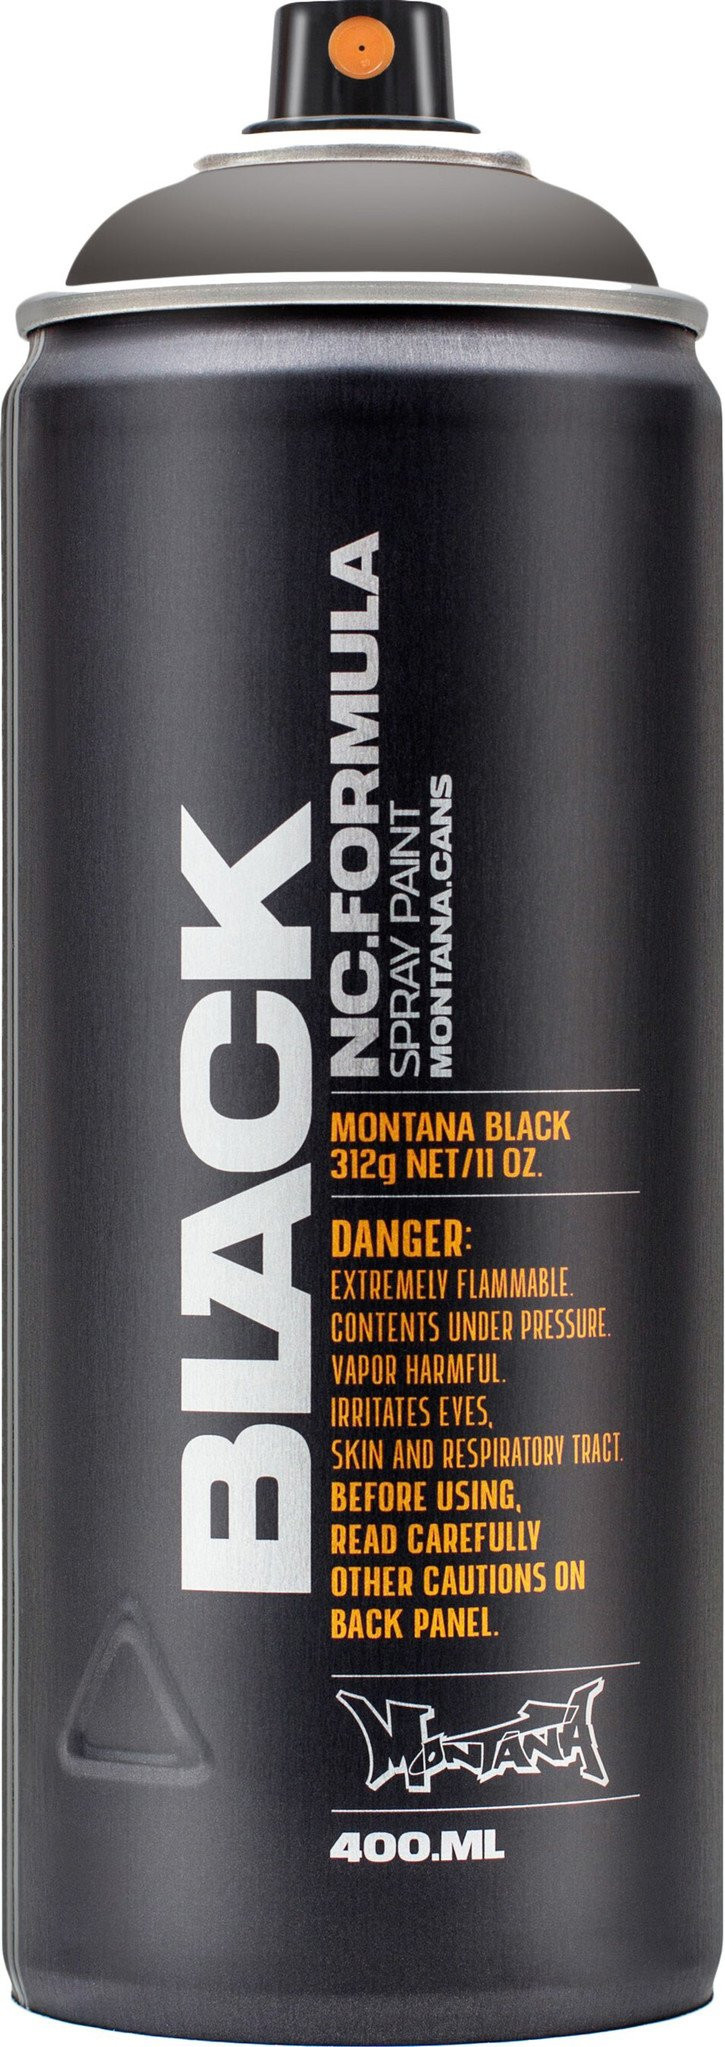 Montana Black 400 ml Slate